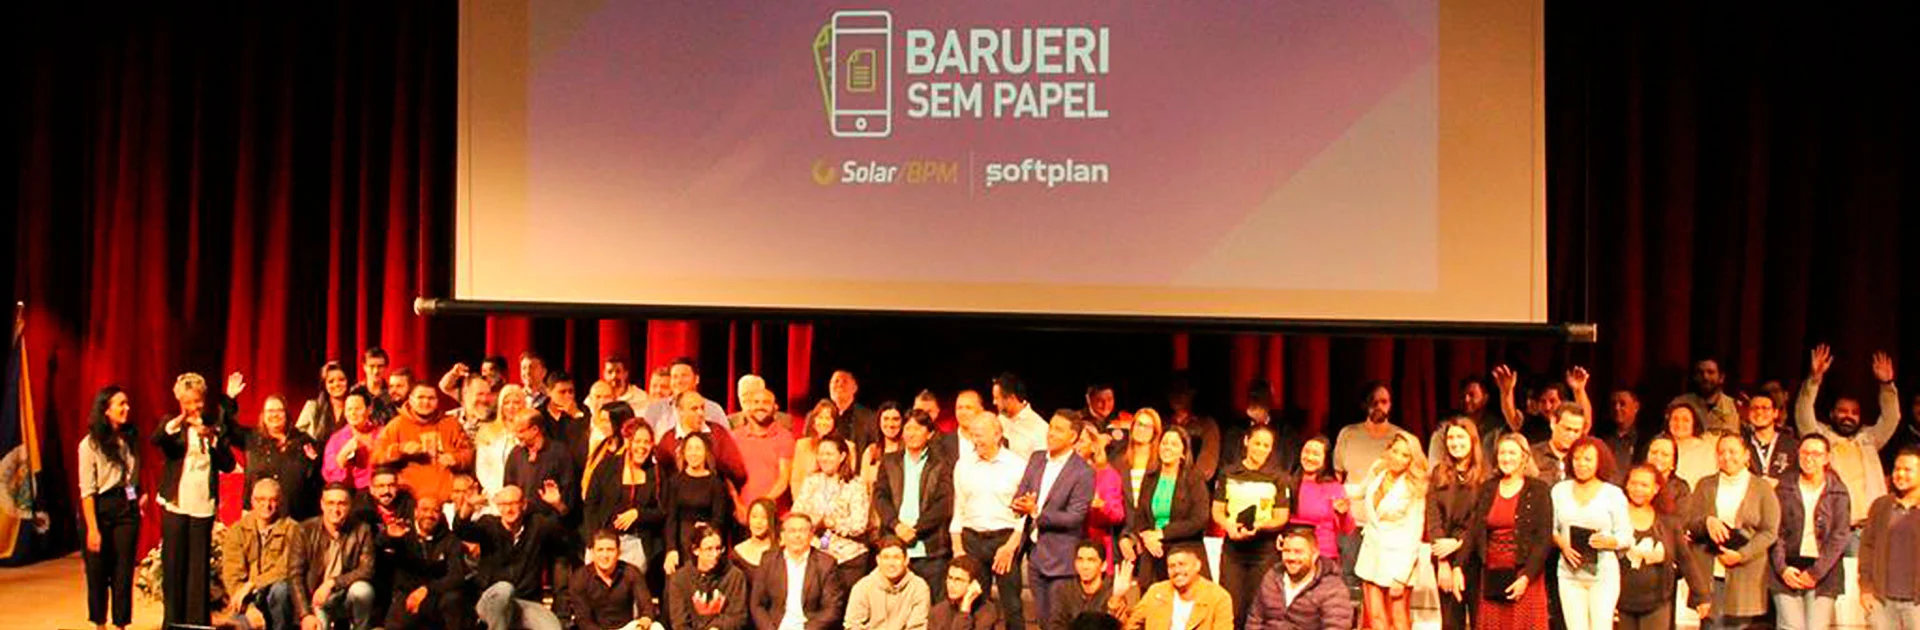 Softplan participa de evento em comemoração ao Barueri Sem Papel